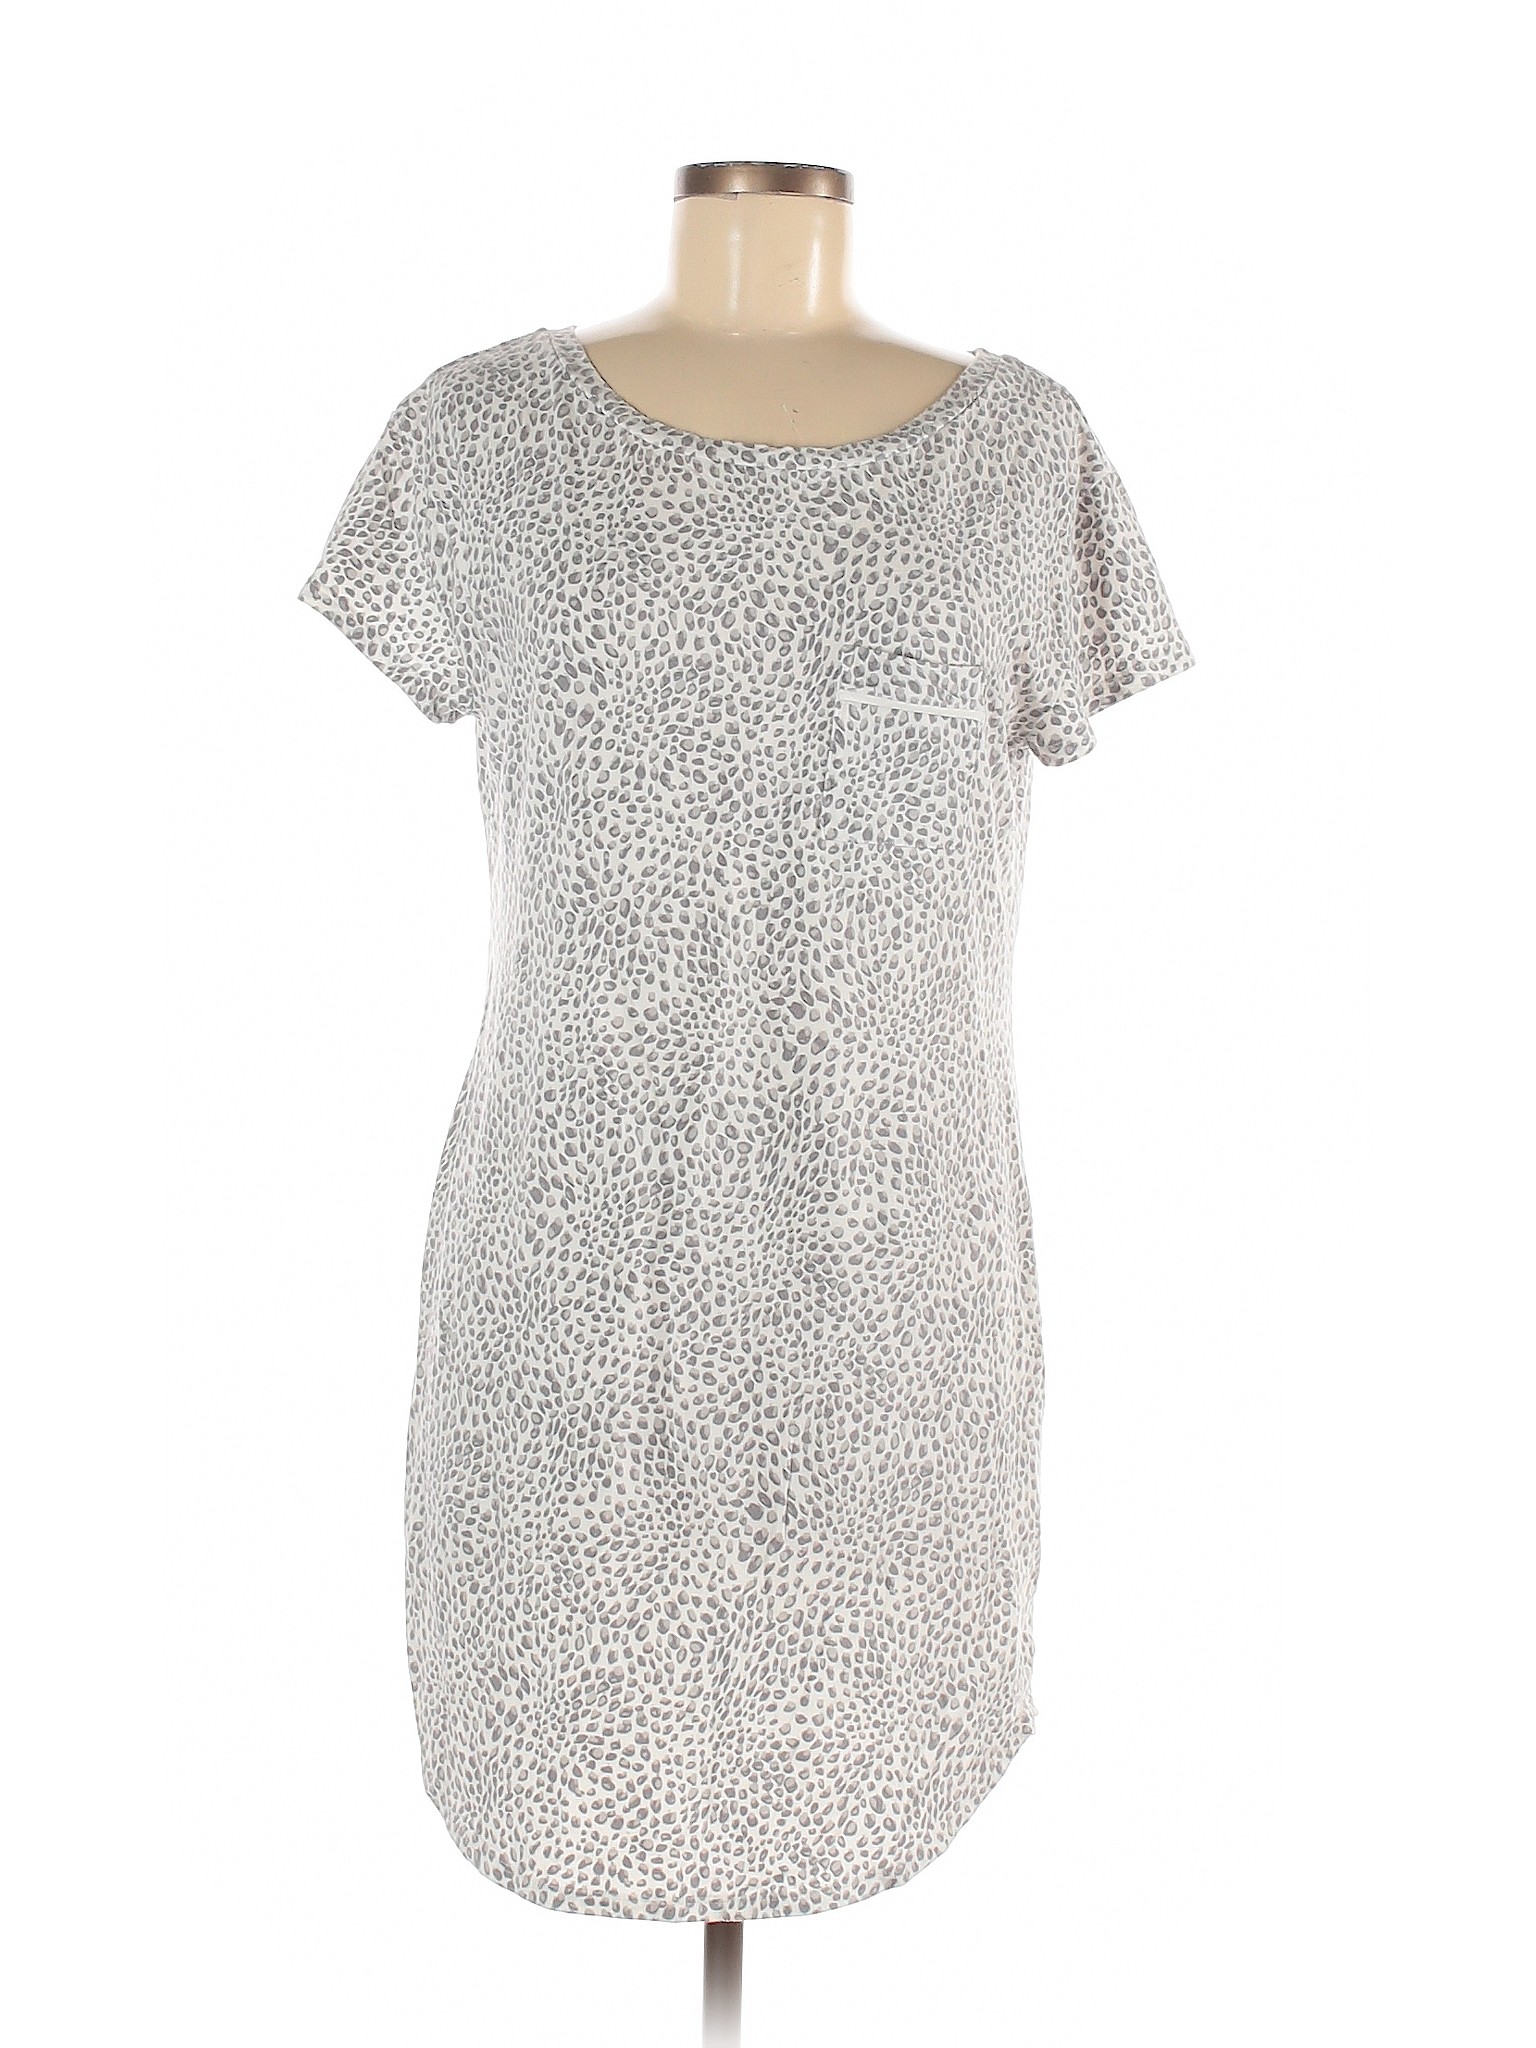 Liz Claiborne Women Gray Casual Dress M | eBay